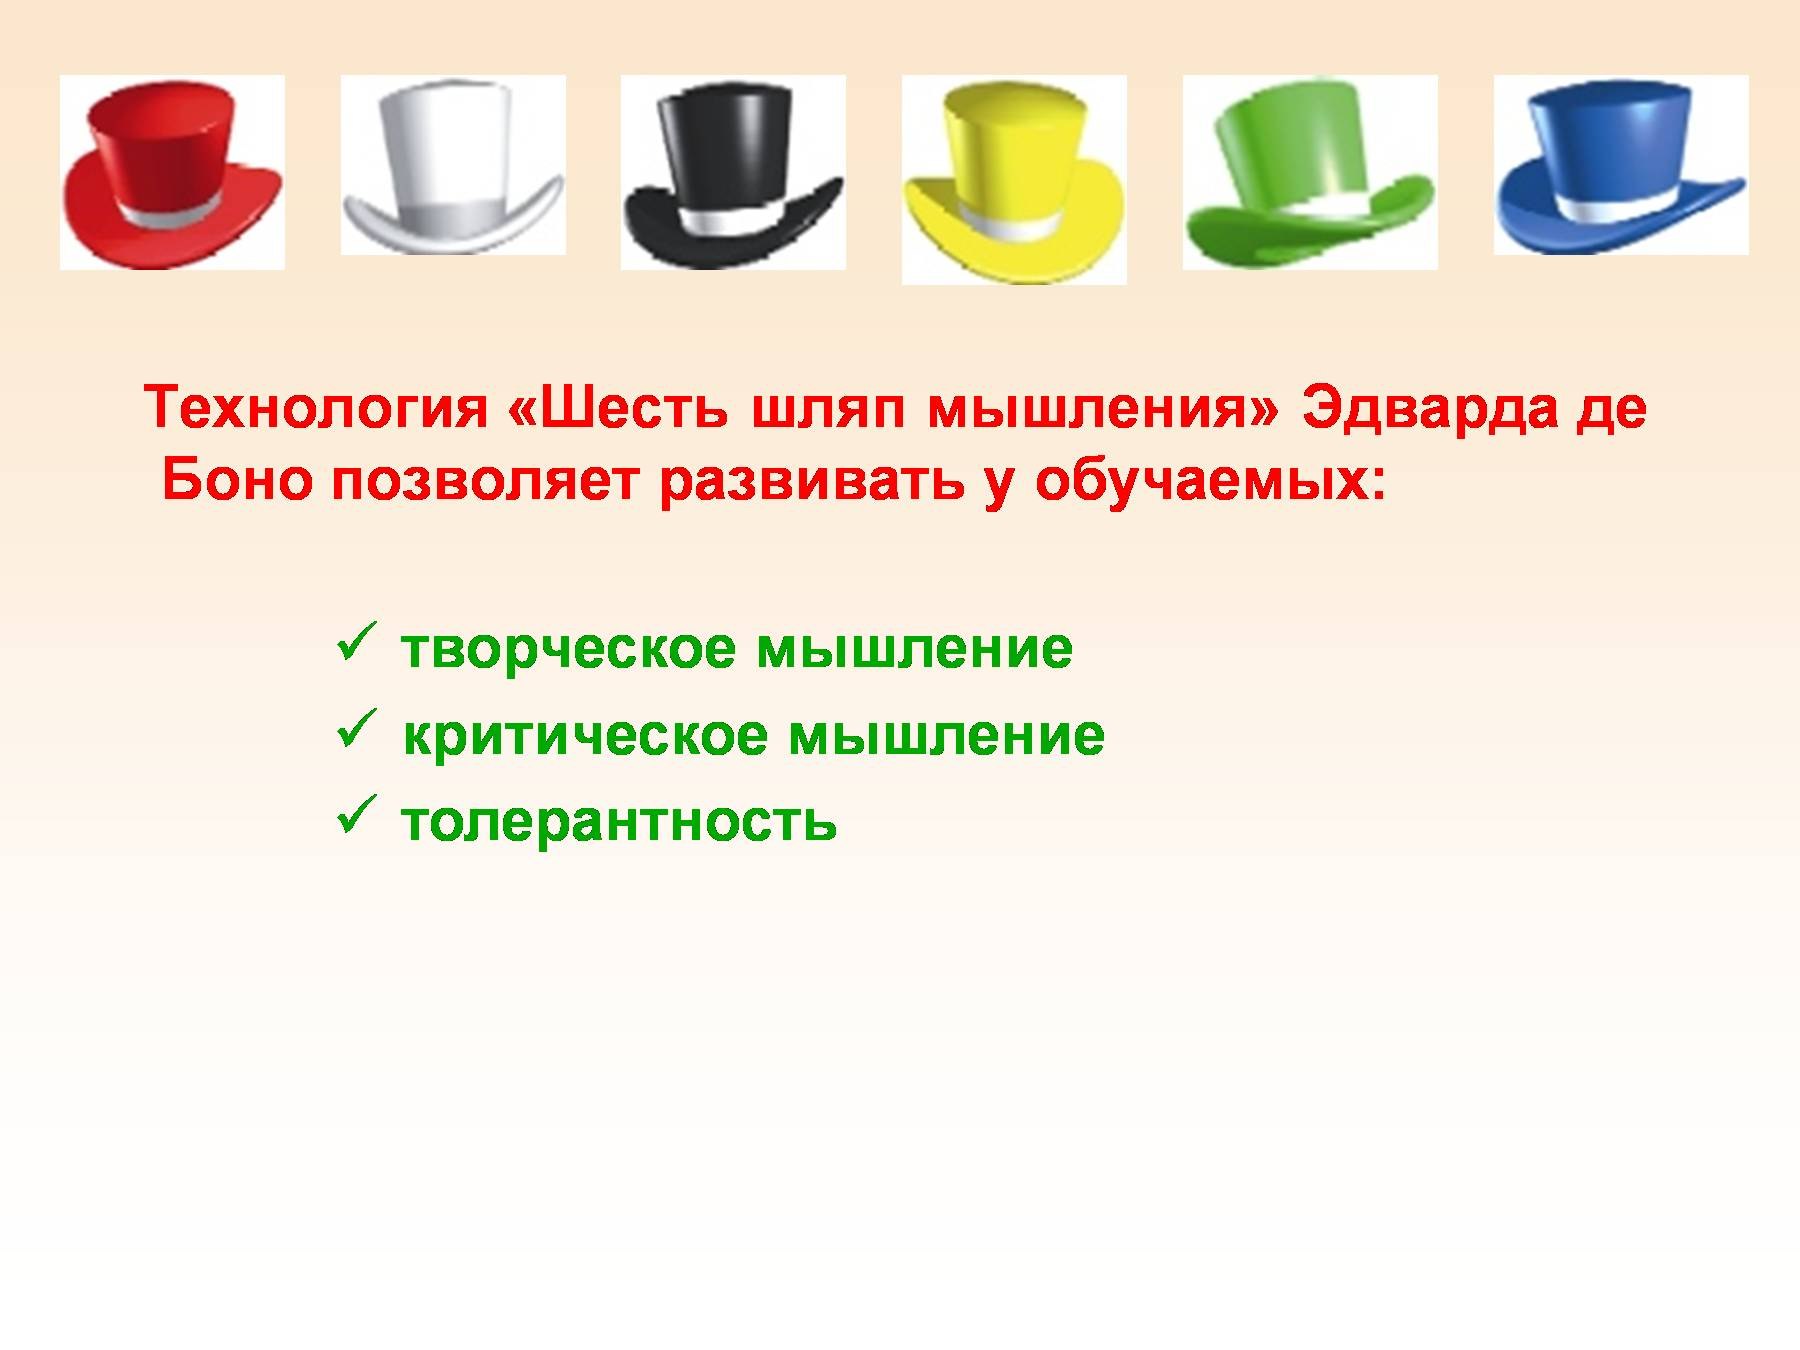 Формы организации рефлексии игра шляпа. Шляпы мышления" Эдварда де Боно. 6 Шляп мышления Боно. 6 Шляп мышления де Боно белая шляпа.